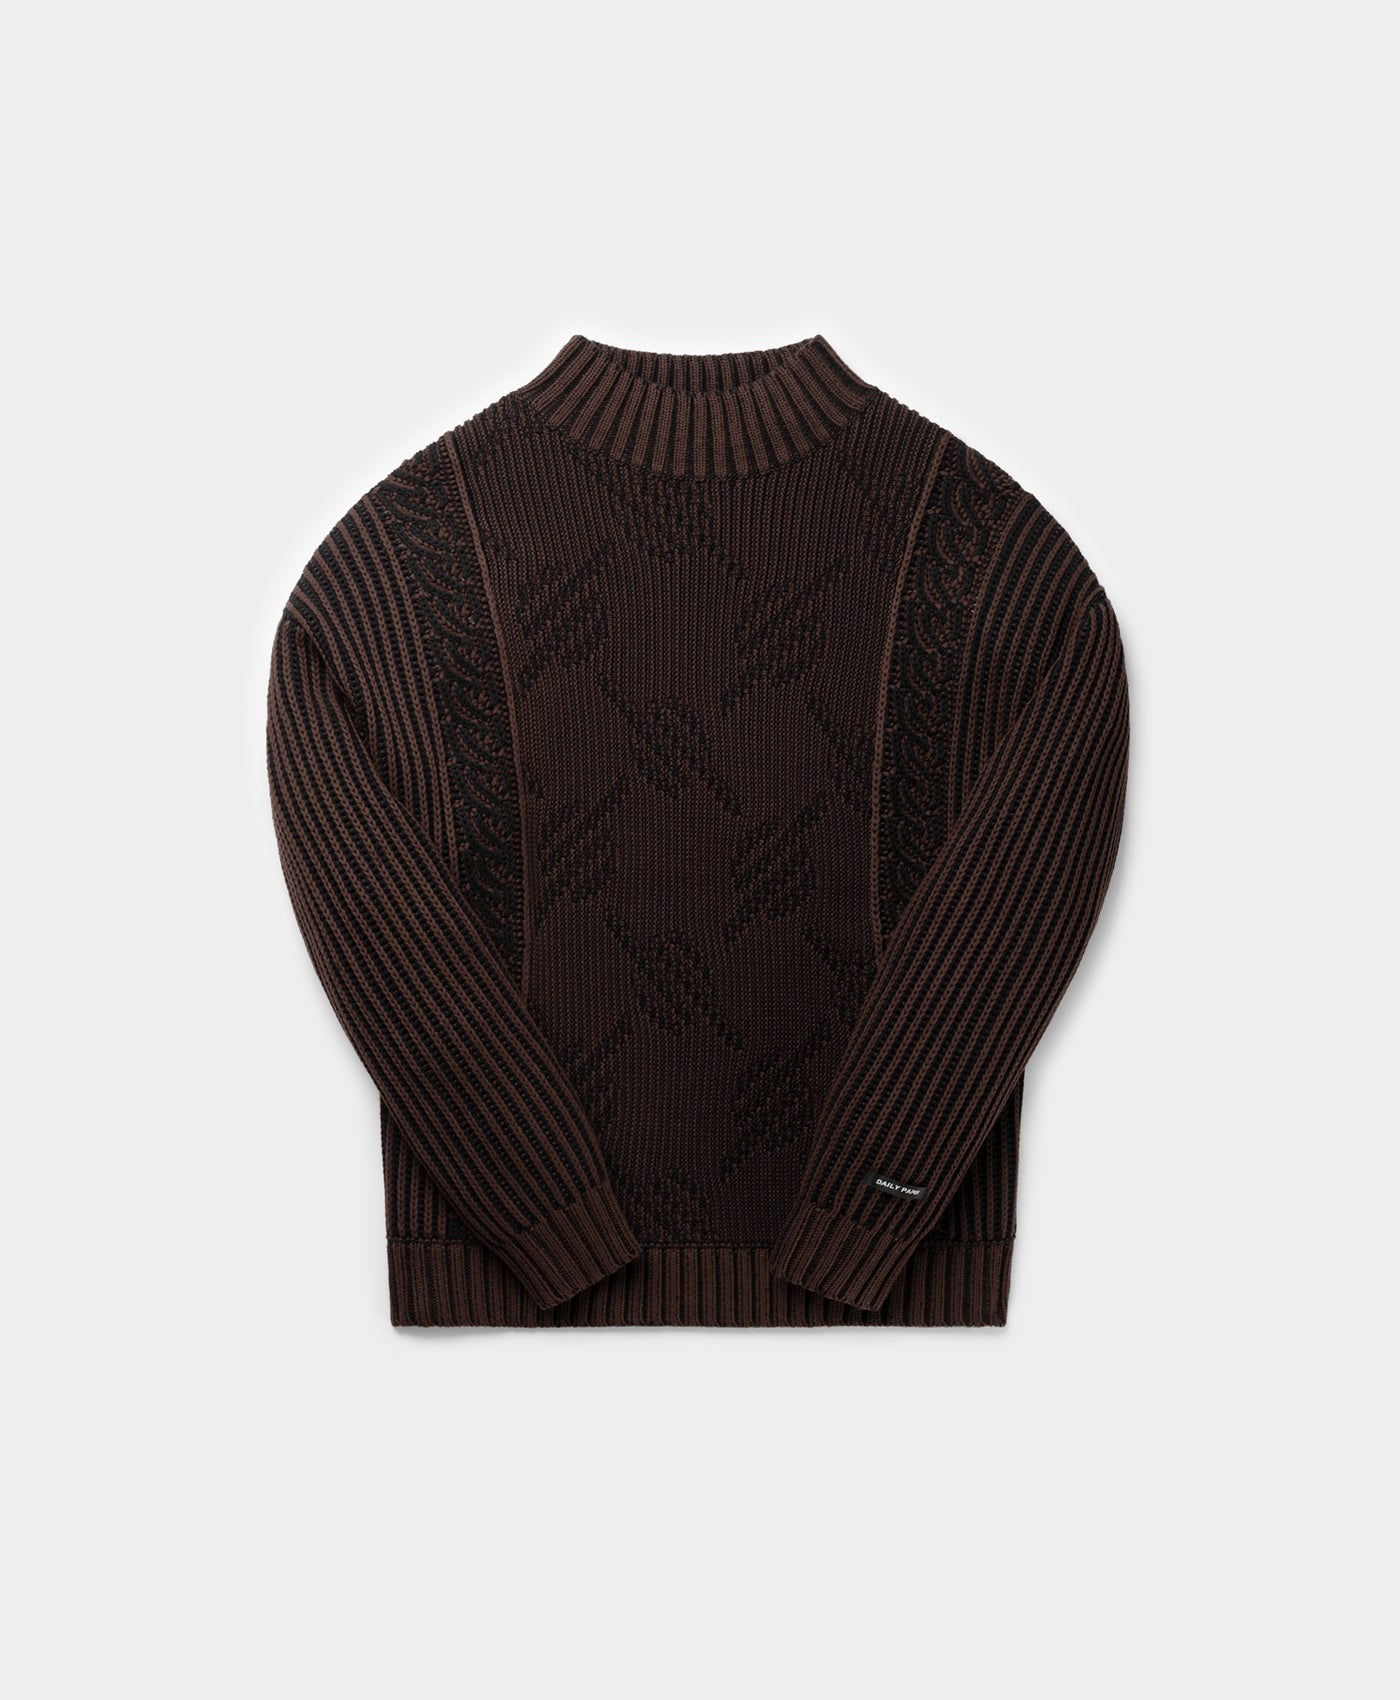 DP - Syrup Brown Rajab Sweater - Packshot - Front